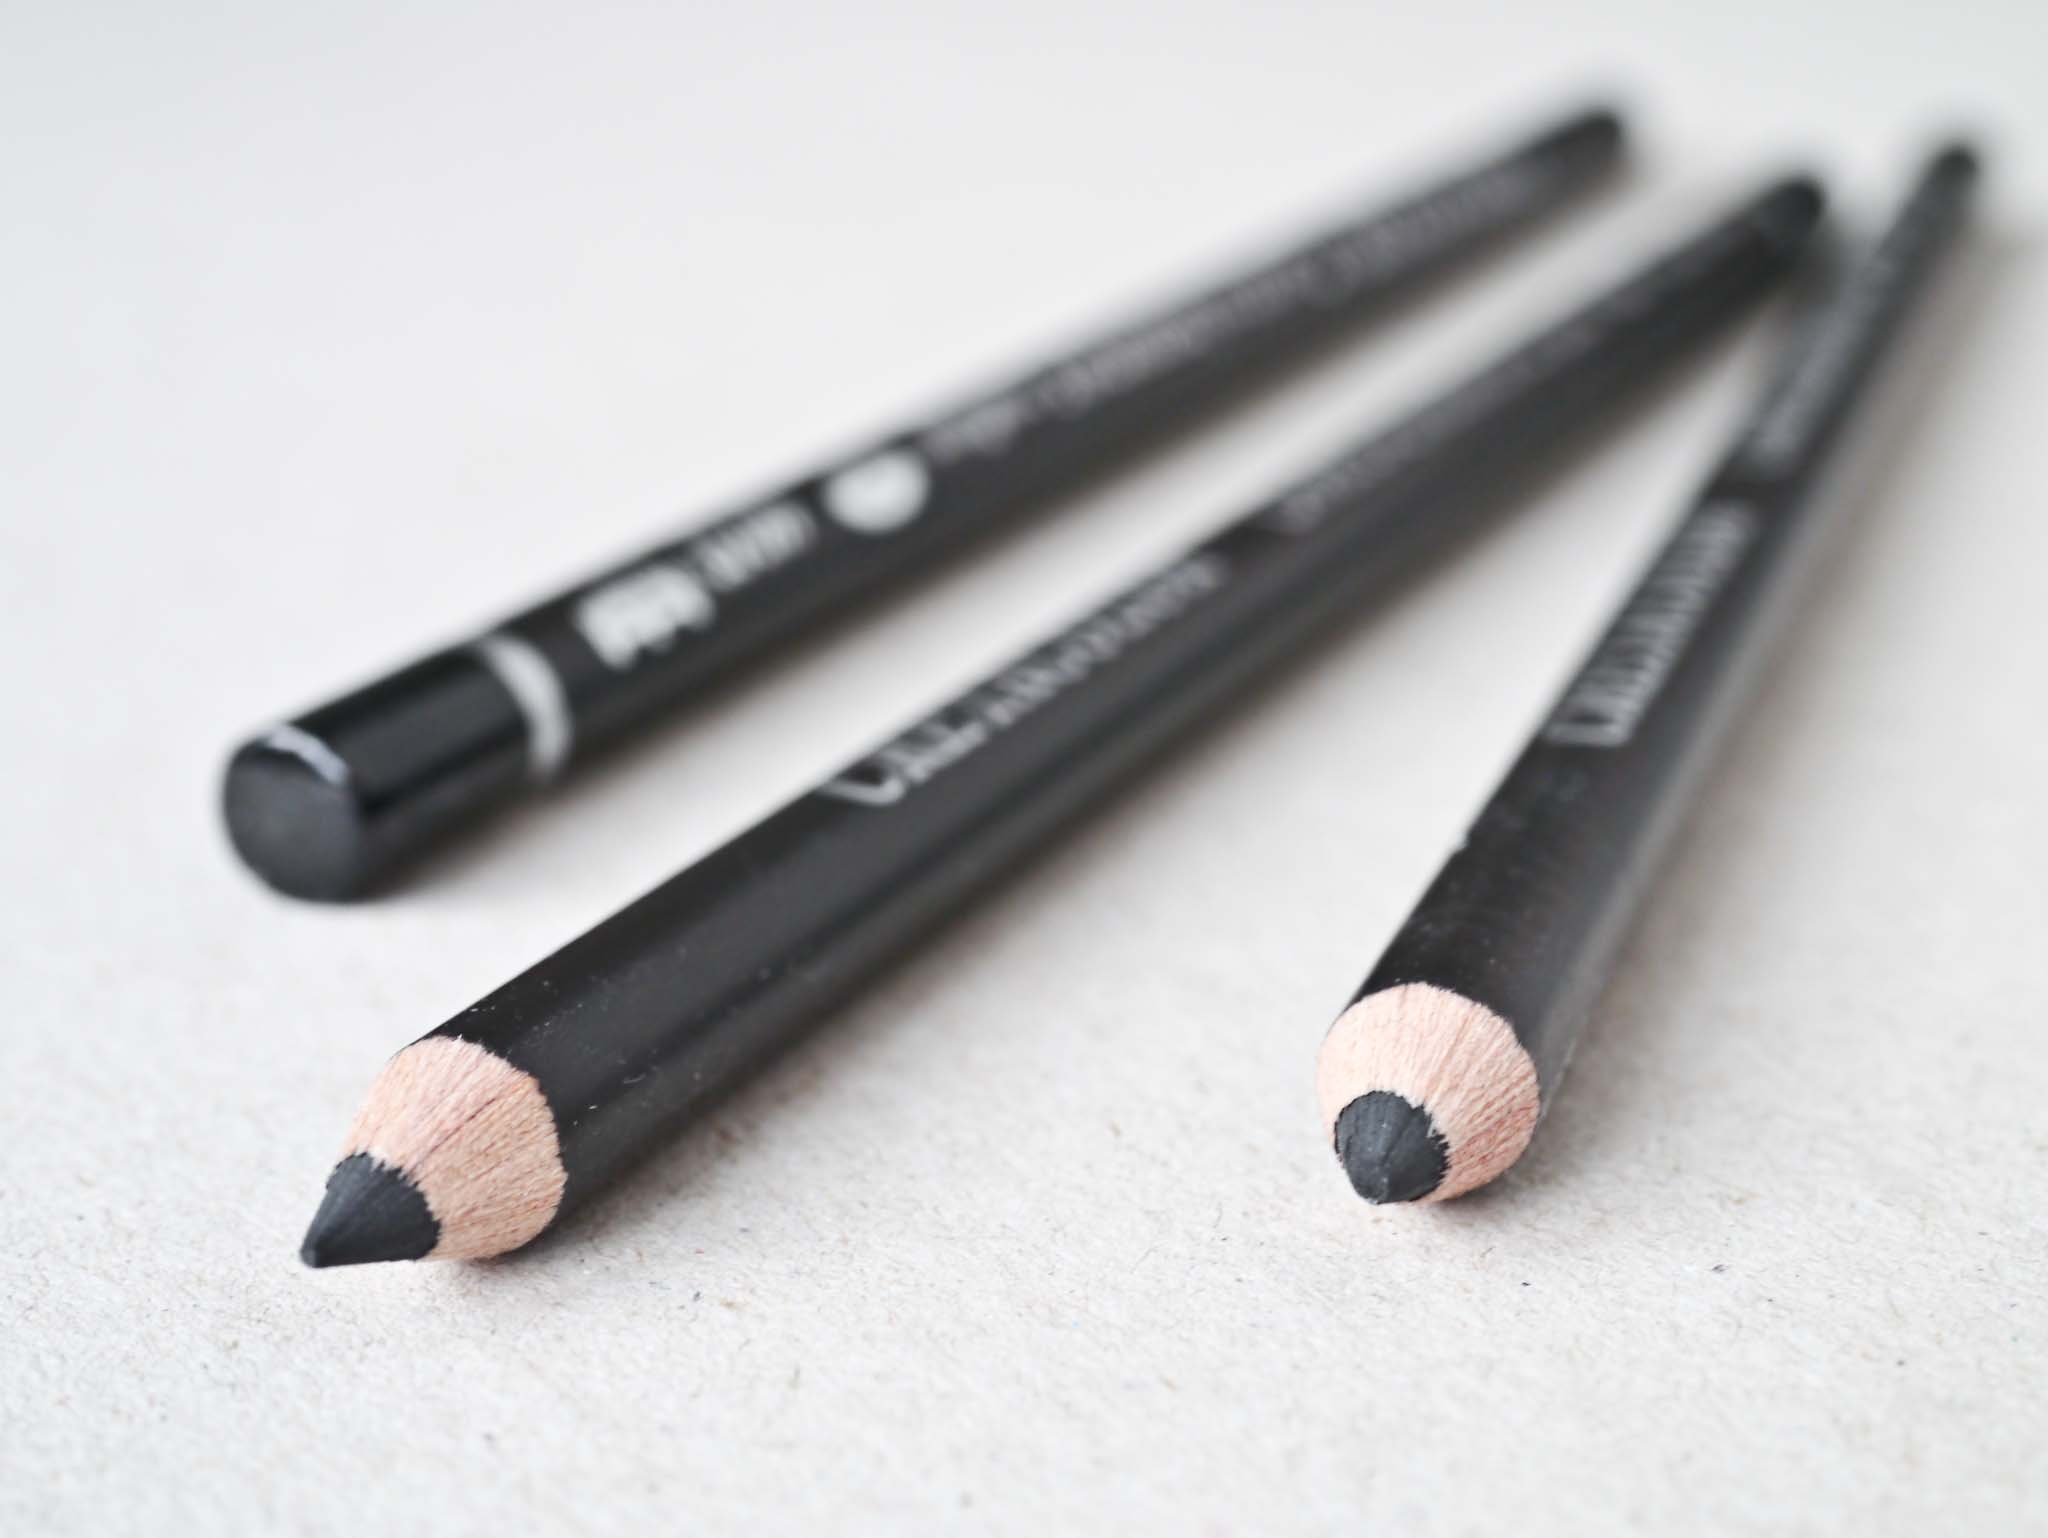 Cretacolor Kulblyanter Charcoal pencils